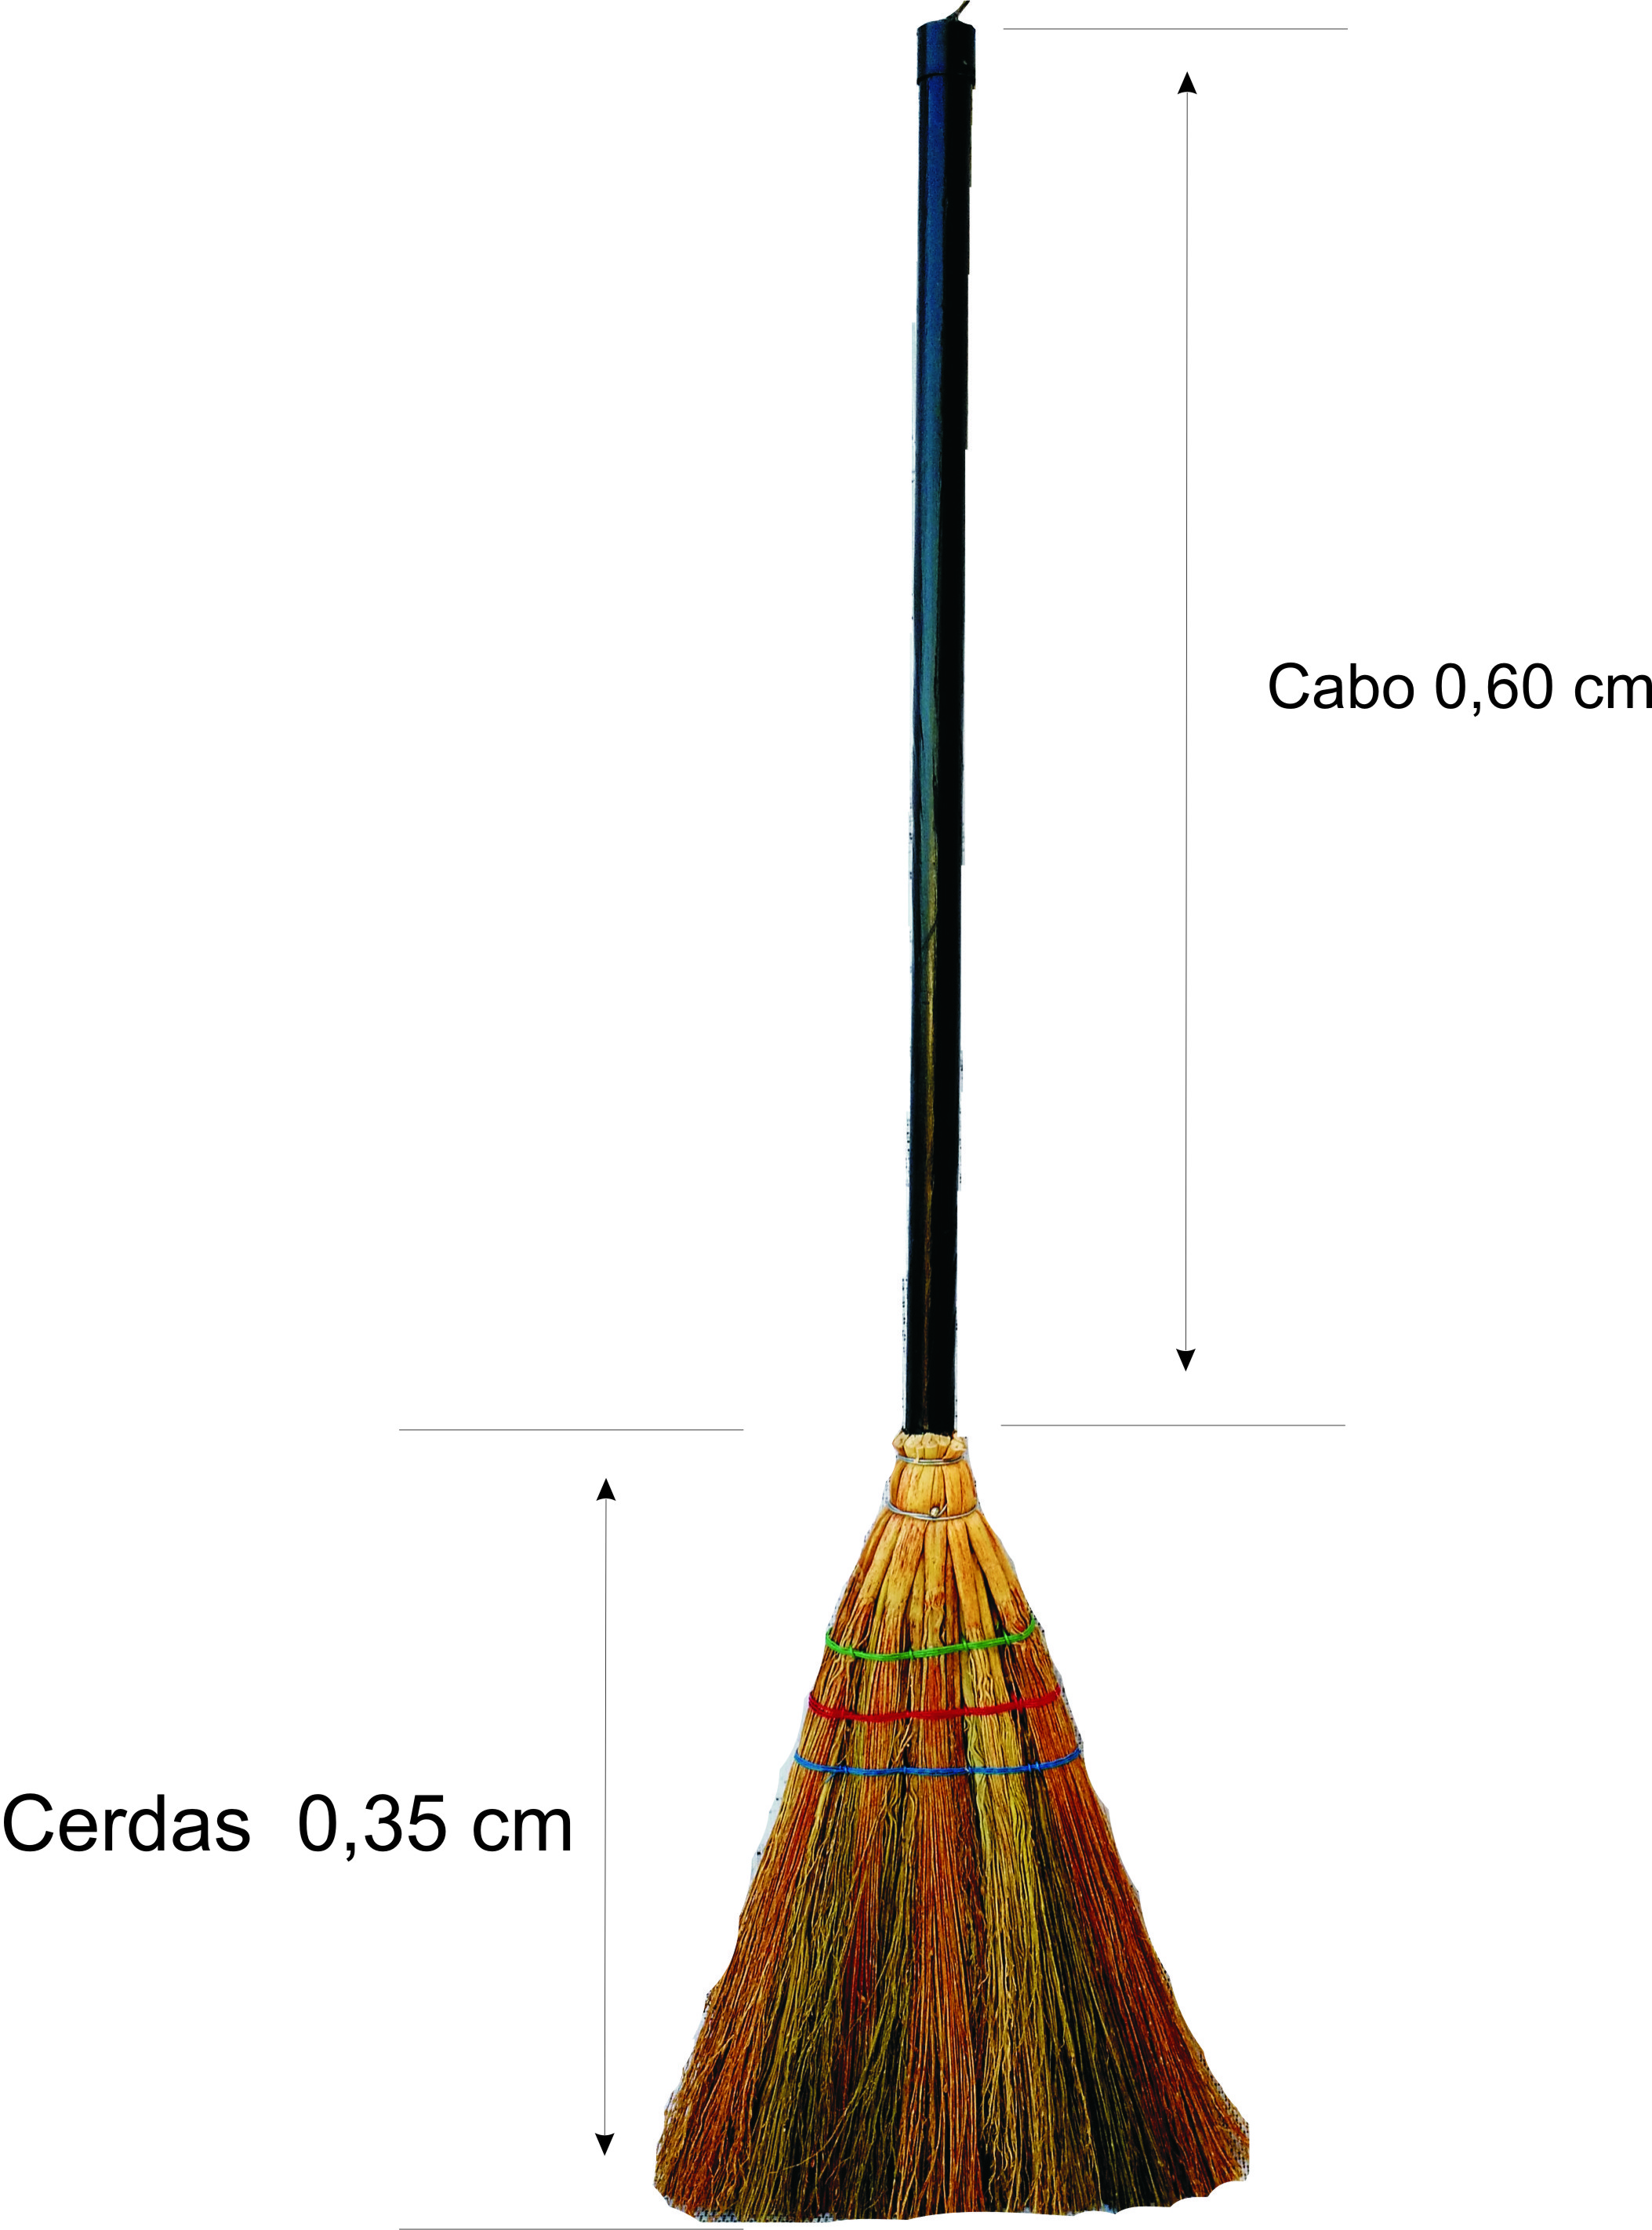 VASSOURA DE BRUXA 1,60cm